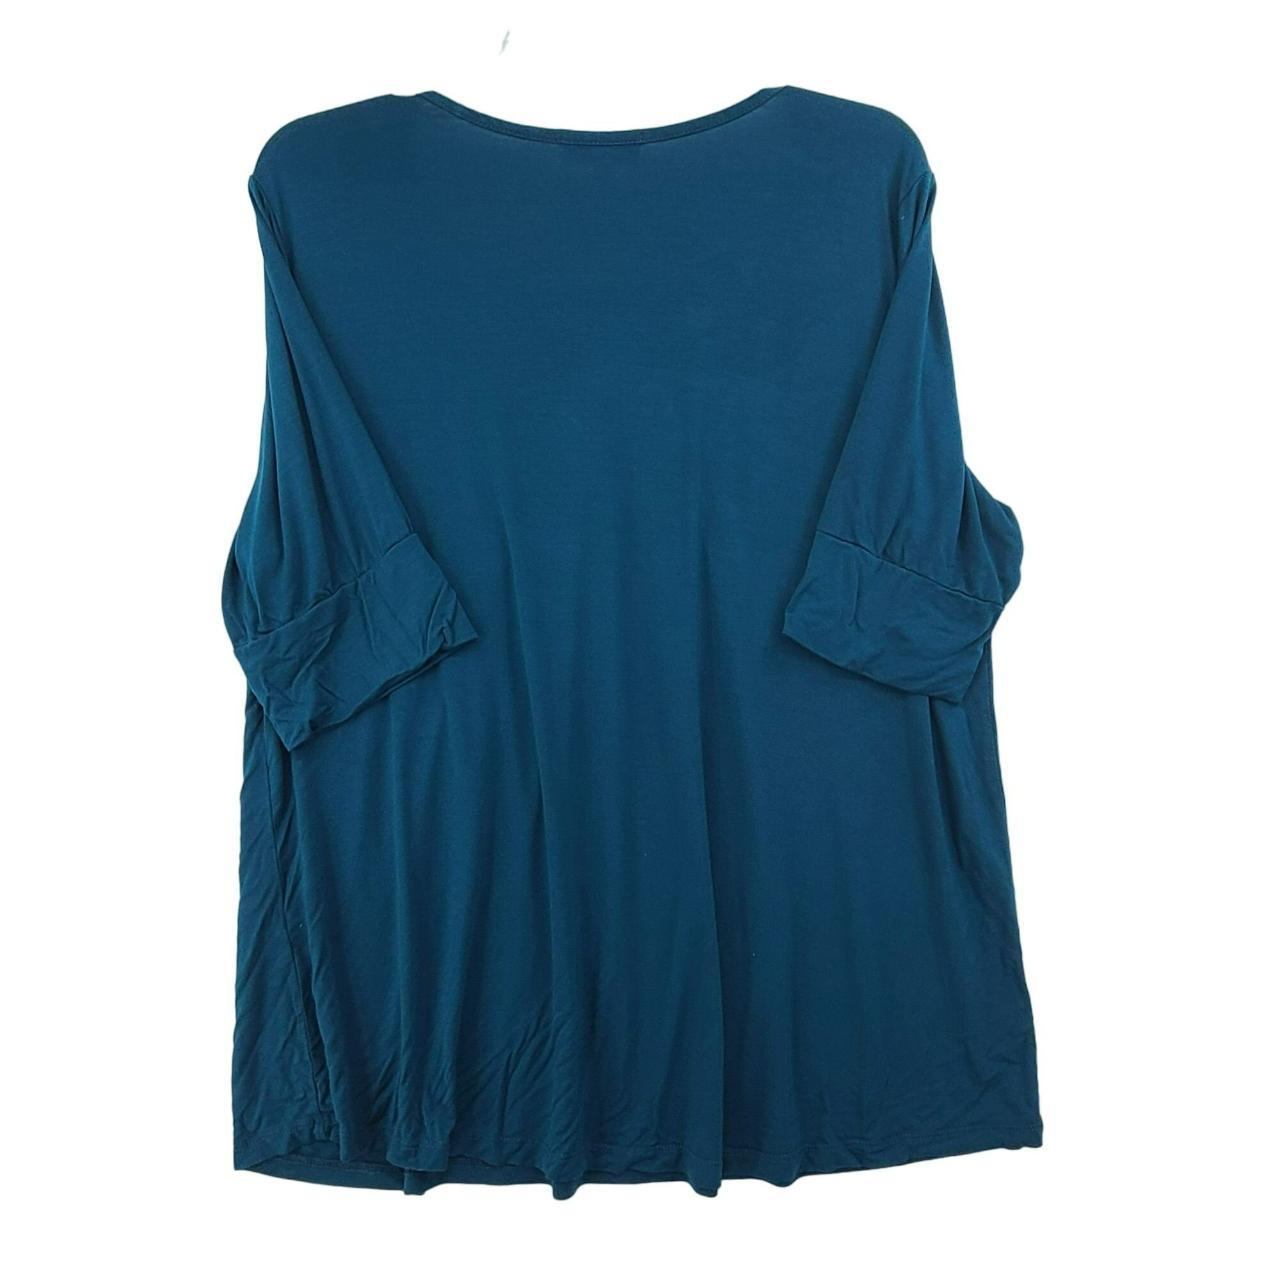 Molly Isadora Women's Short Sleeve Pullover Top Blue... - Depop